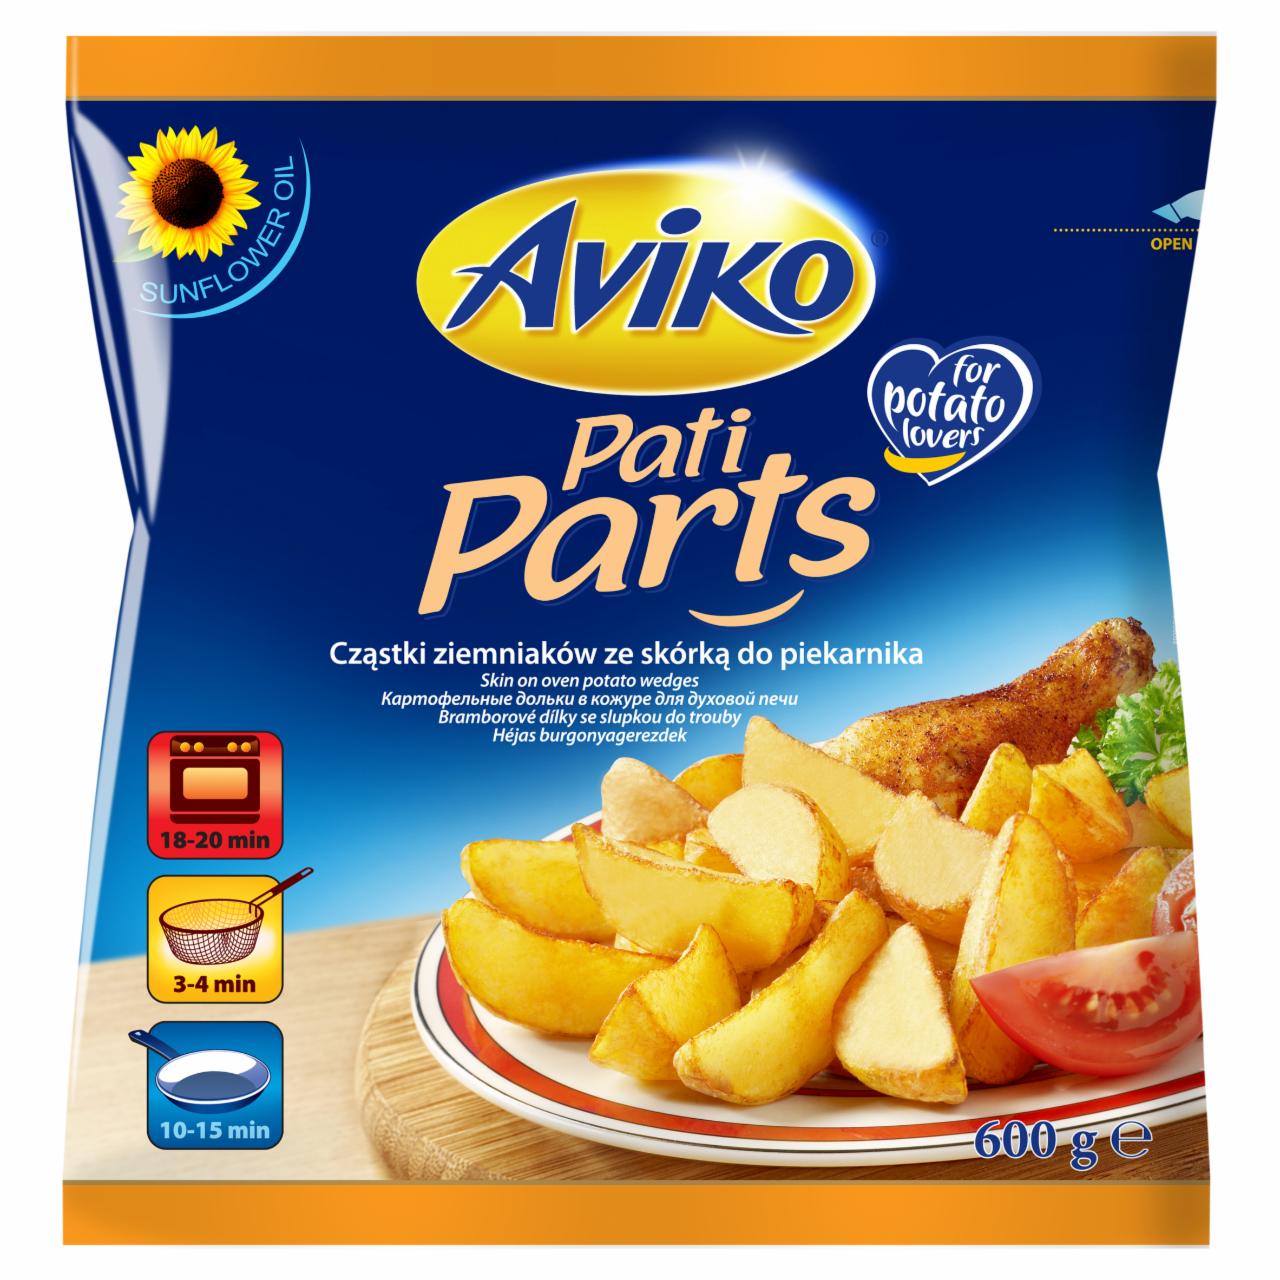 Zdjęcia - Pati Parts Classic Cząstki ziemniaków ze skórką Aviko